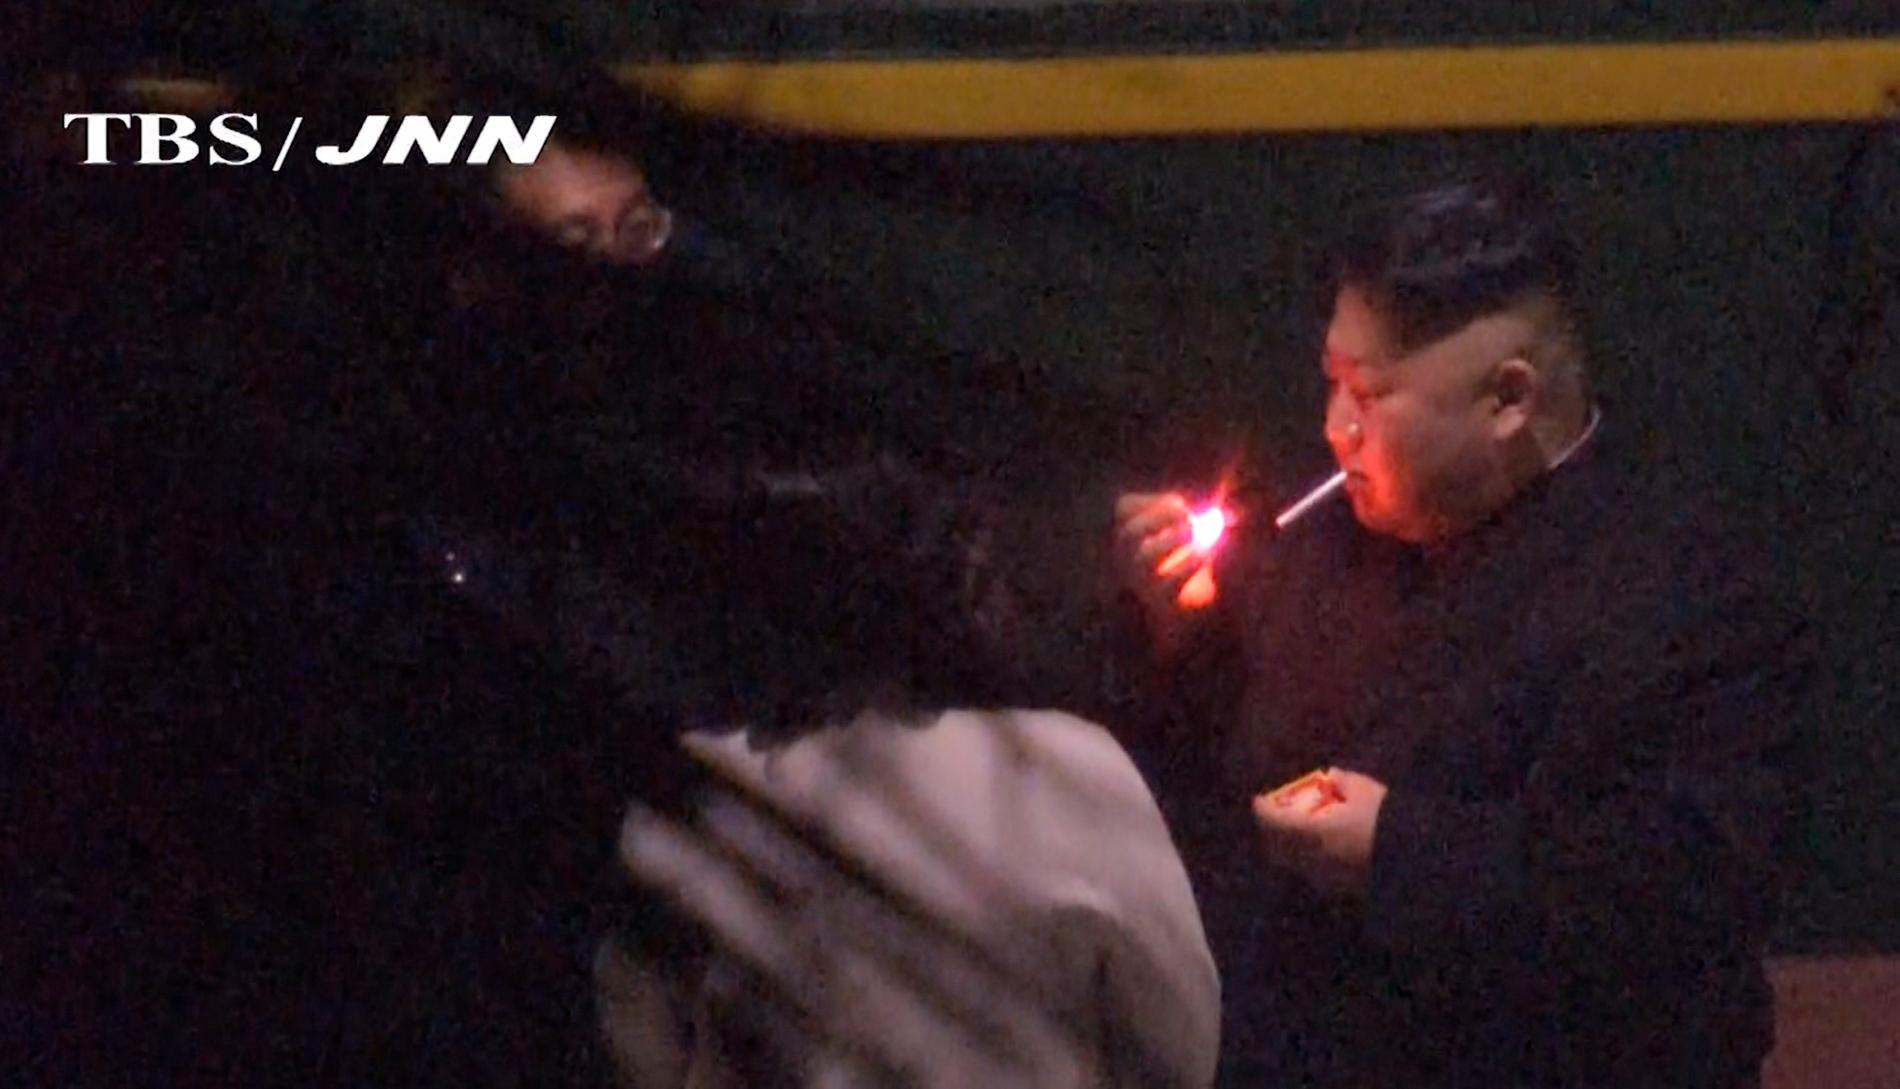 Kim Jong-Un tar en cigg på en tågstation i Kina, på väg mot Vietnam. Bild från japansk tv.